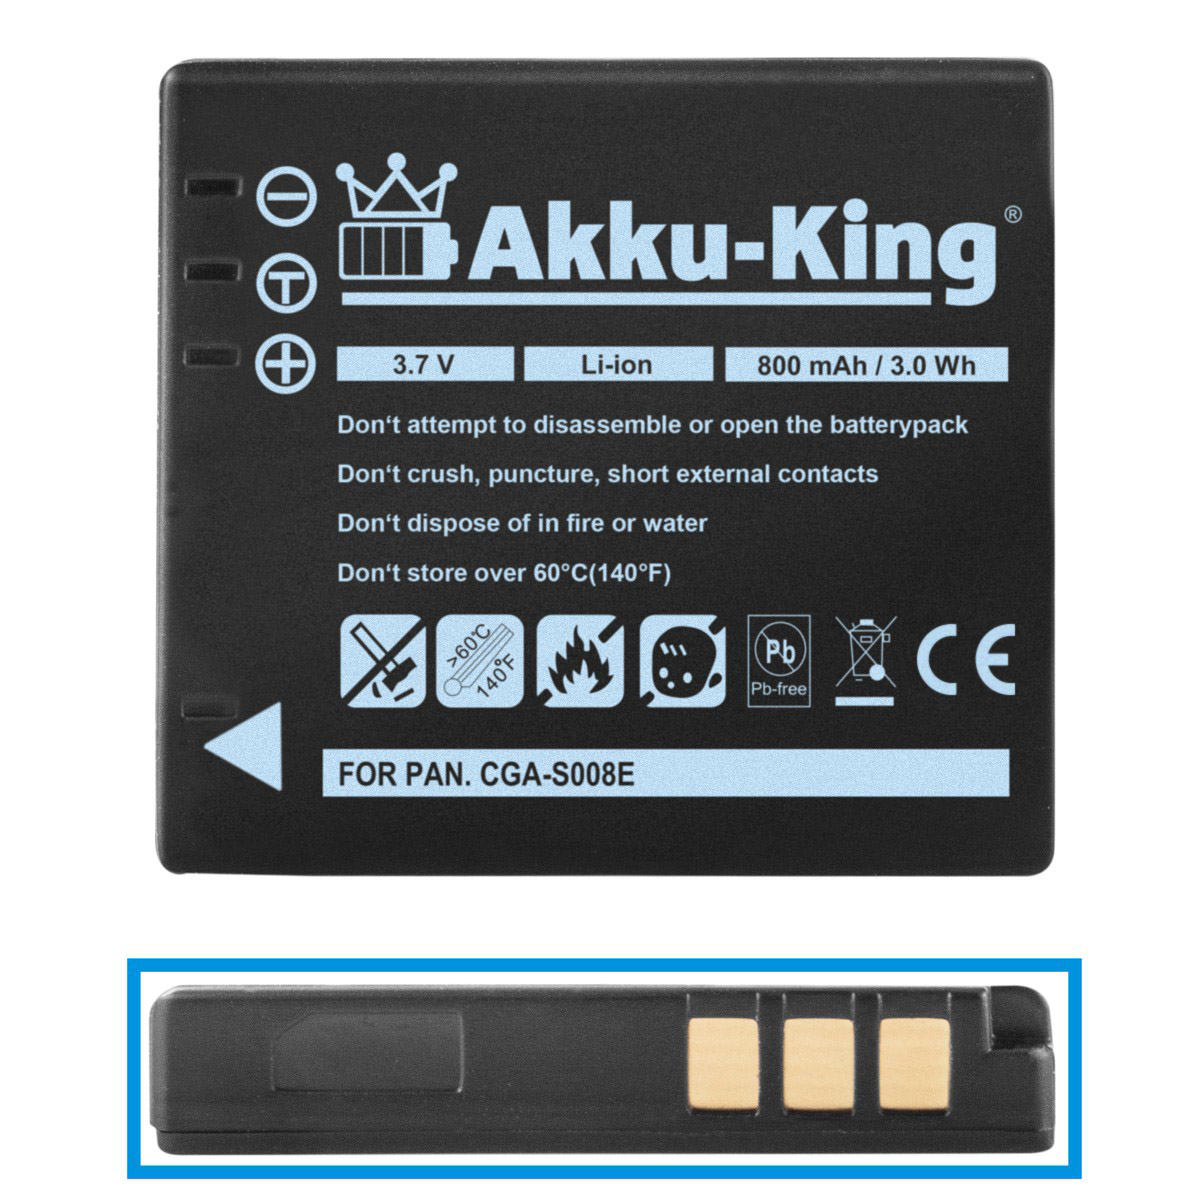 Kamera-Akku, Akku mit 800mAh 3.7 kompatibel Panasonic Volt, Li-Ion AKKU-KING CGA-S008E